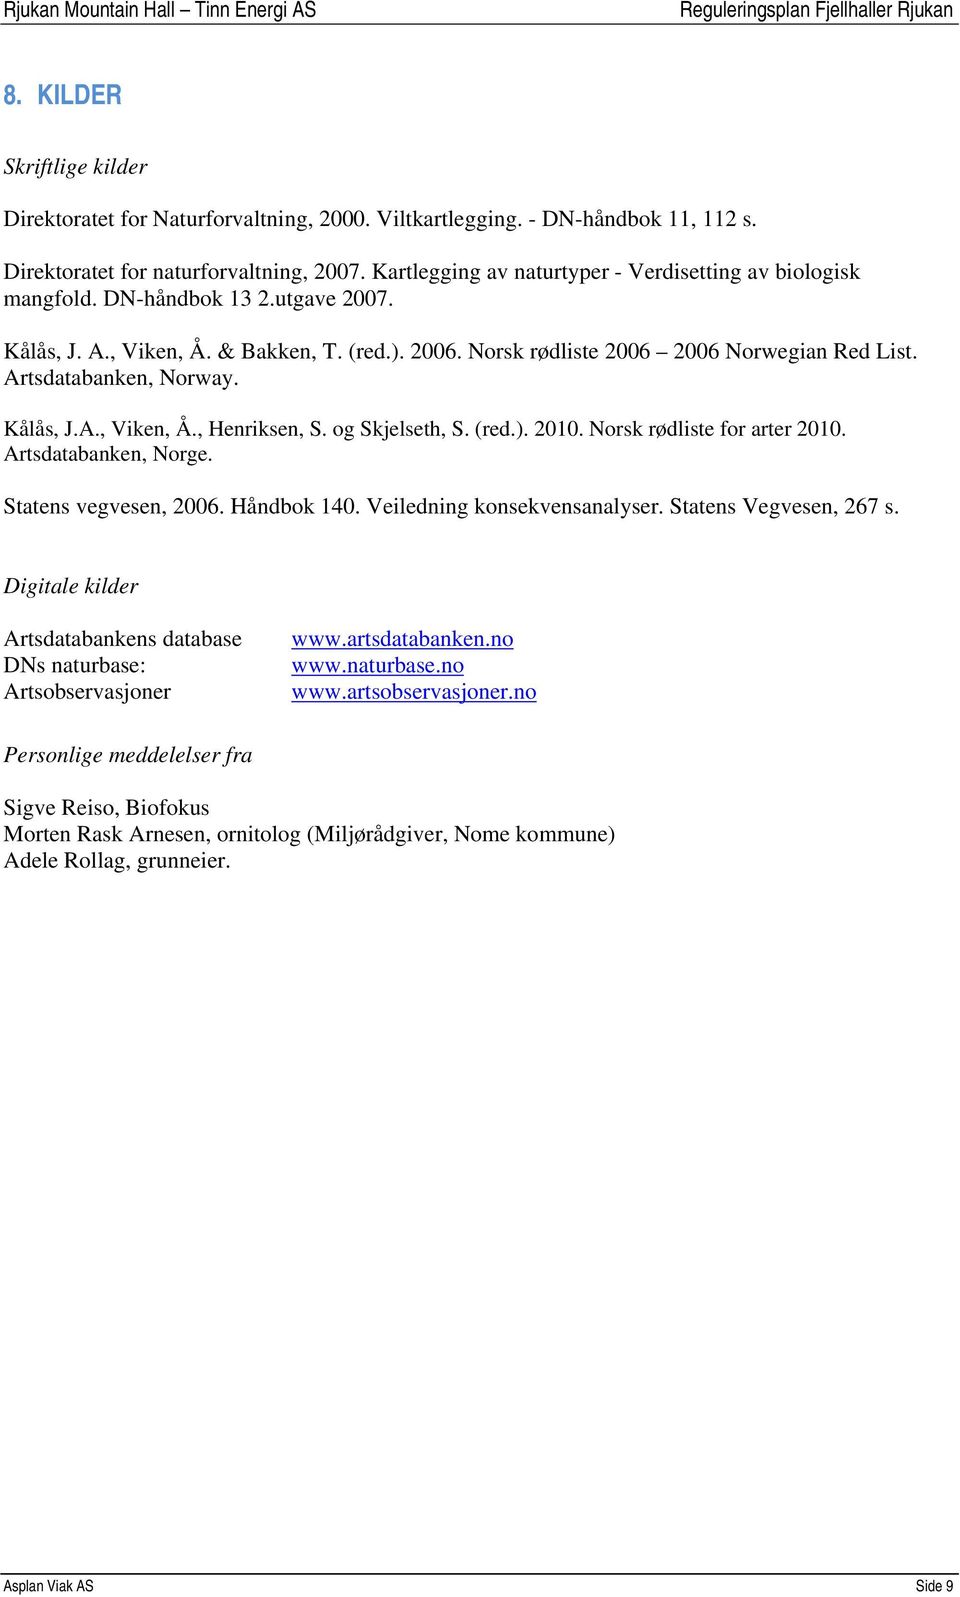 Artsdatabanken, Norway. Kålås, J.A., Viken, Å., Henriksen, S. og Skjelseth, S. (red.). 2010. Norsk rødliste for arter 2010. Artsdatabanken, Norge. Statens vegvesen, 2006. Håndbok 140.